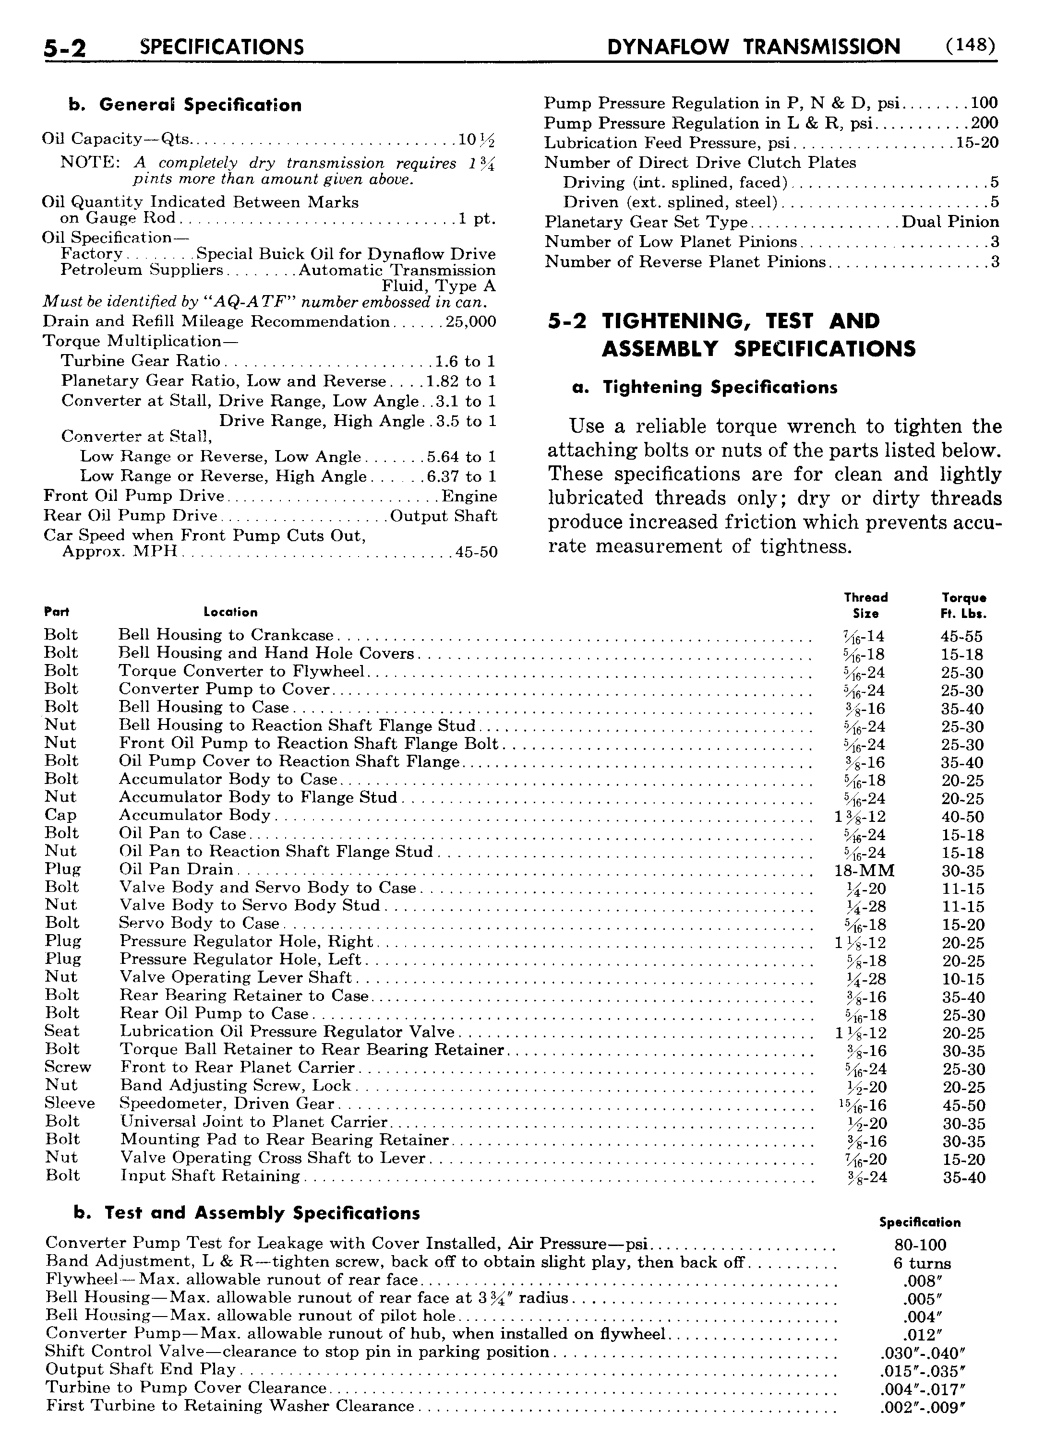 n_06 1956 Buick Shop Manual - Dynaflow-002-002.jpg